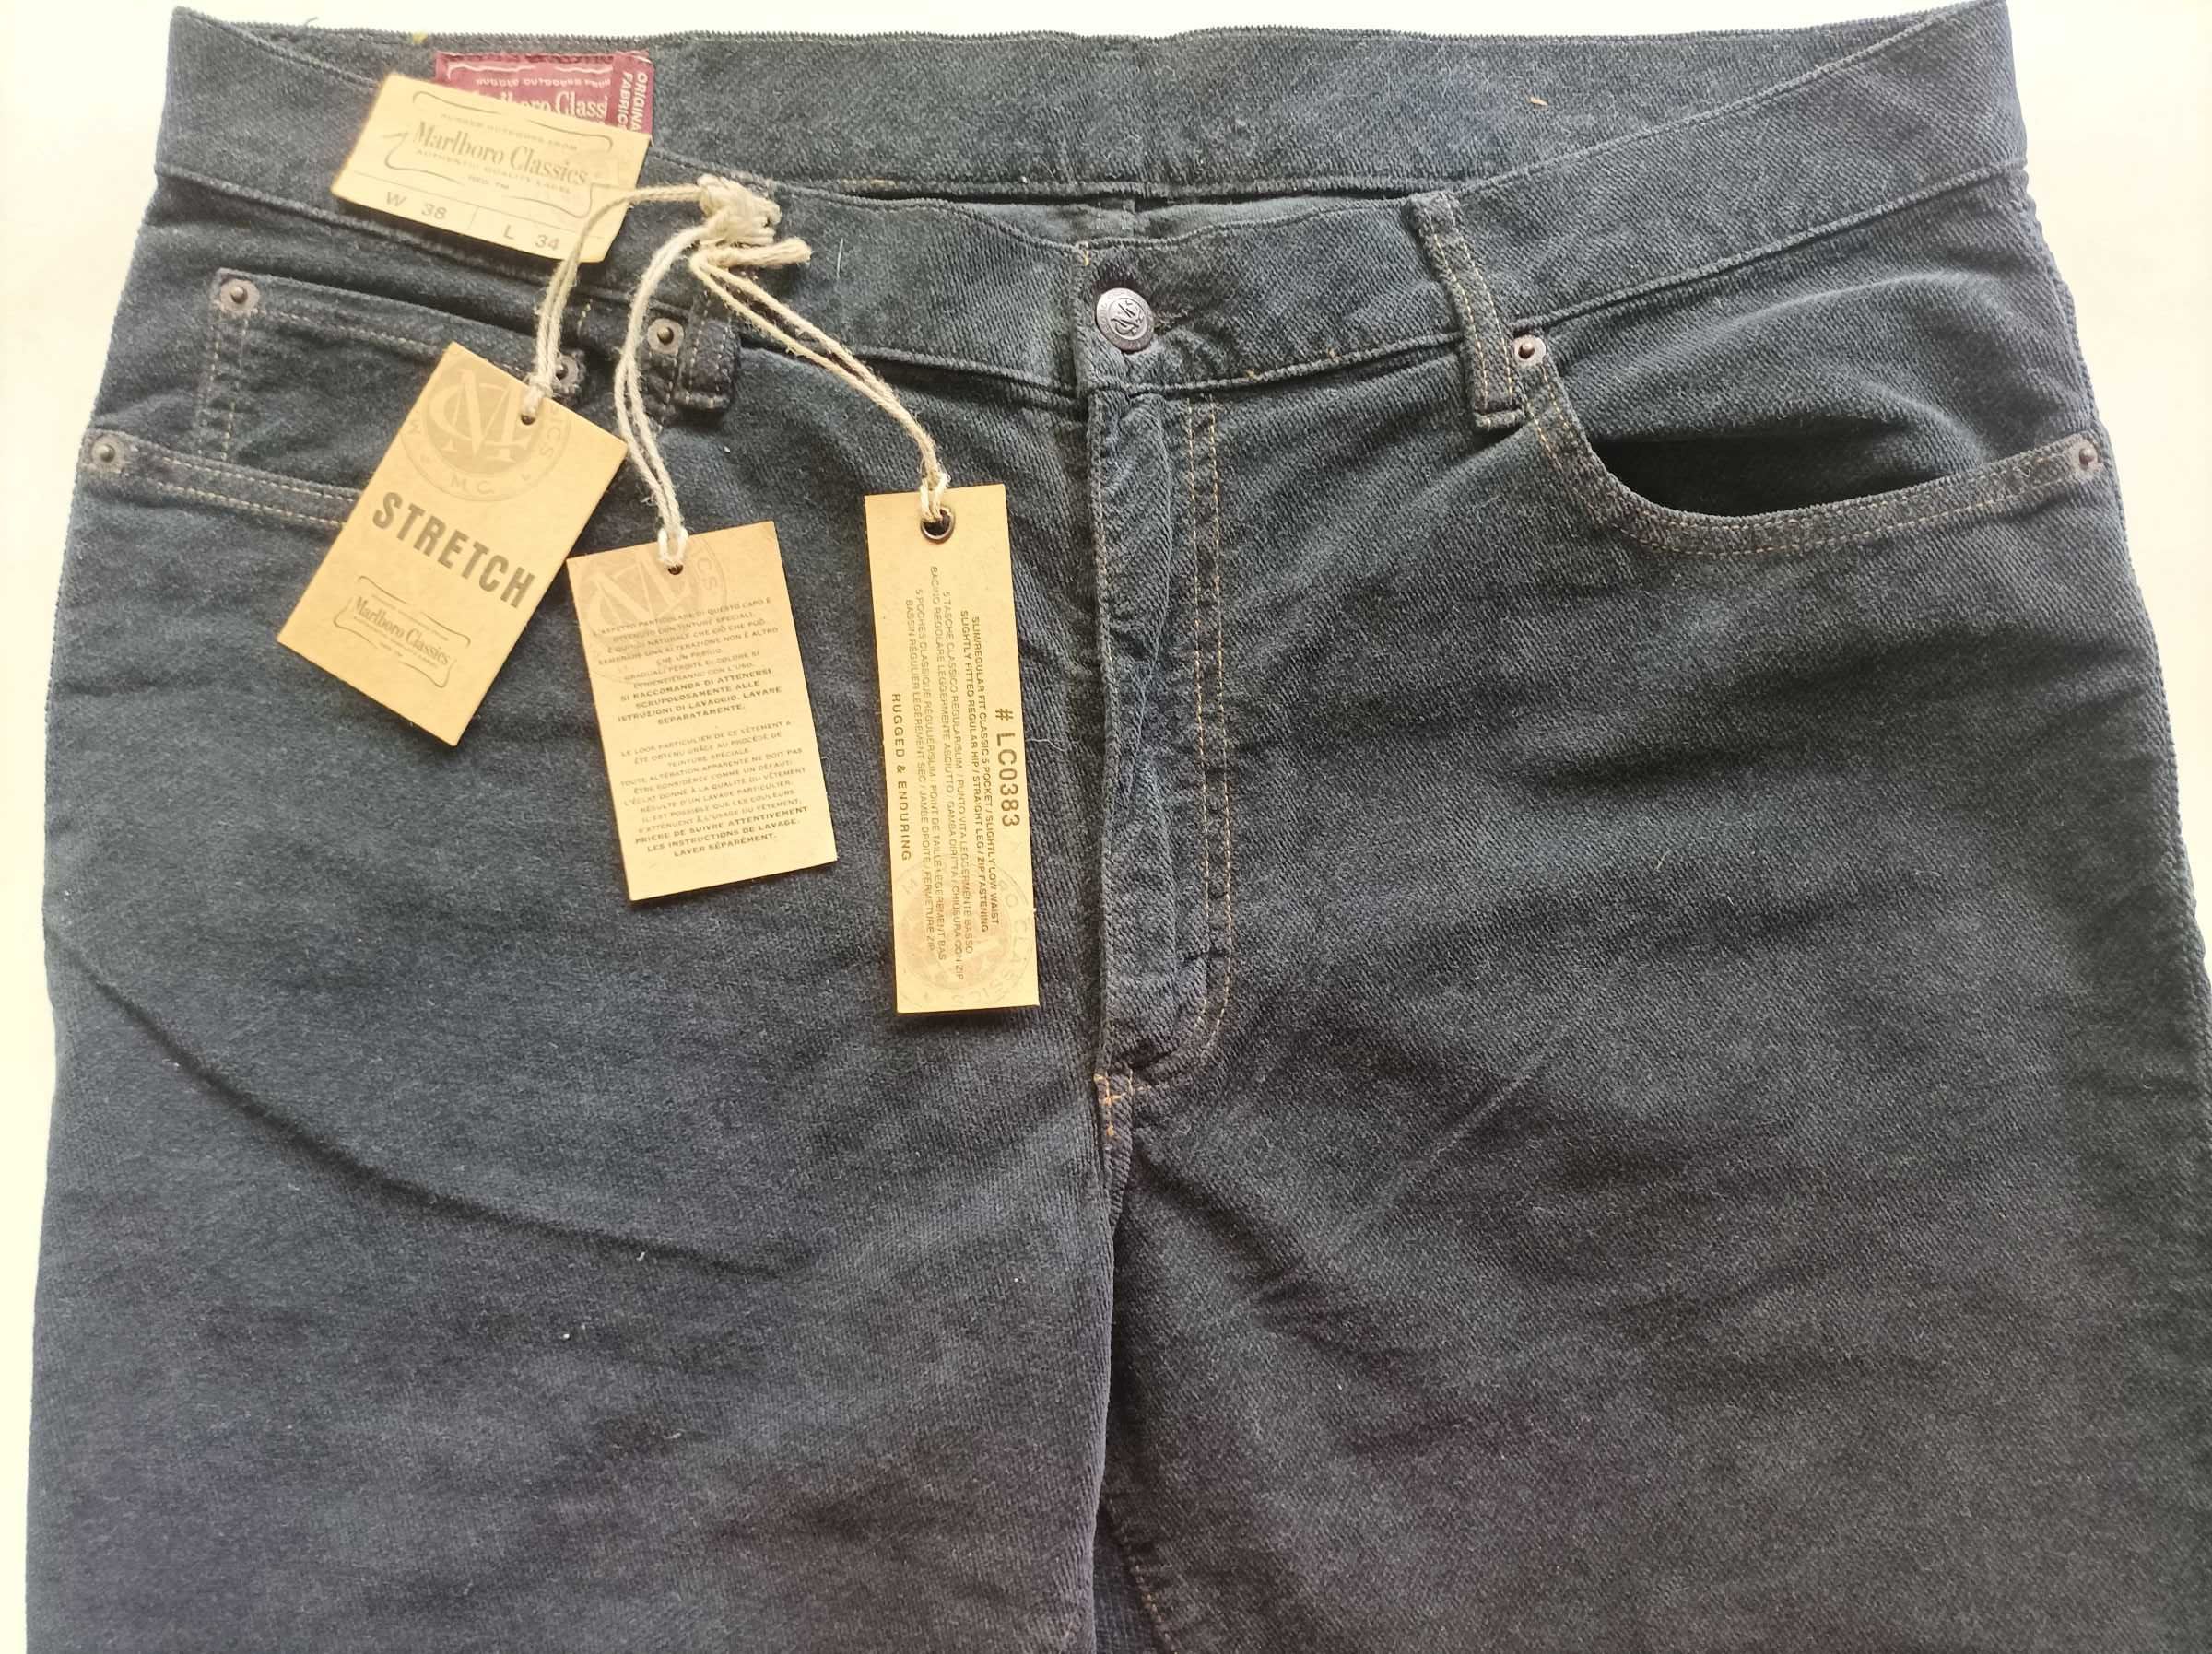 Велюровые джинсы Marlboro  Classics, W38 L34